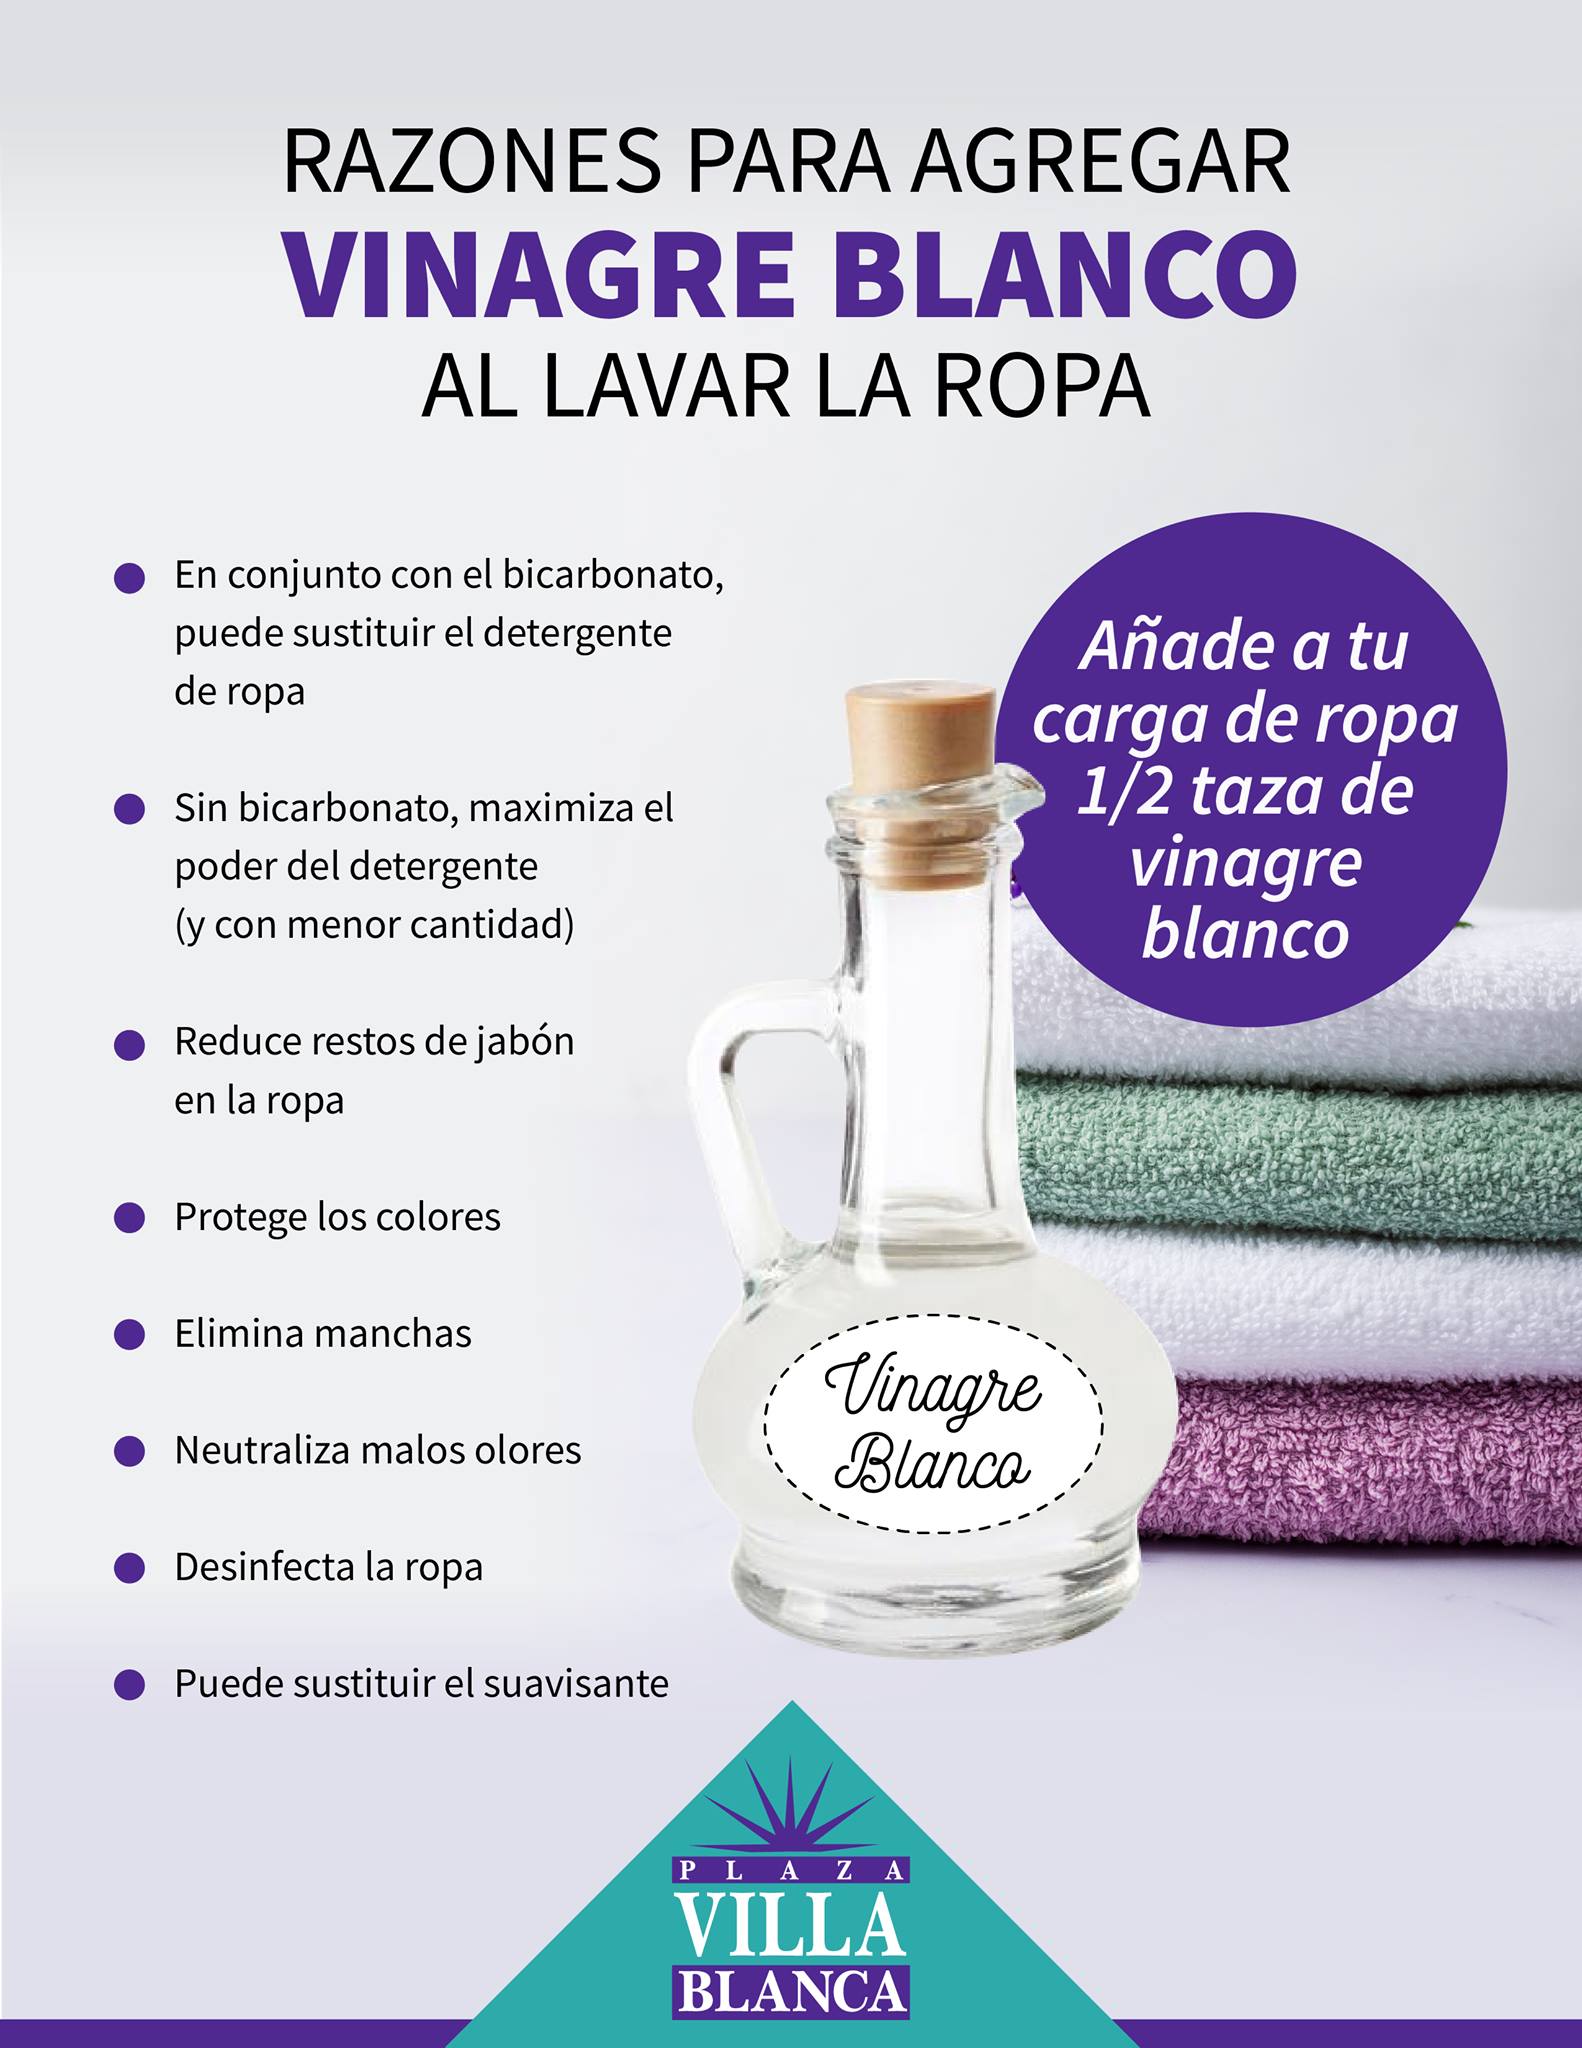 CCM Puerto Rico on "Échale un ojo a los beneficios tiene el utilizar vinagre blanco para lavar tu ropa. #caguas #plazavillablanca / Twitter